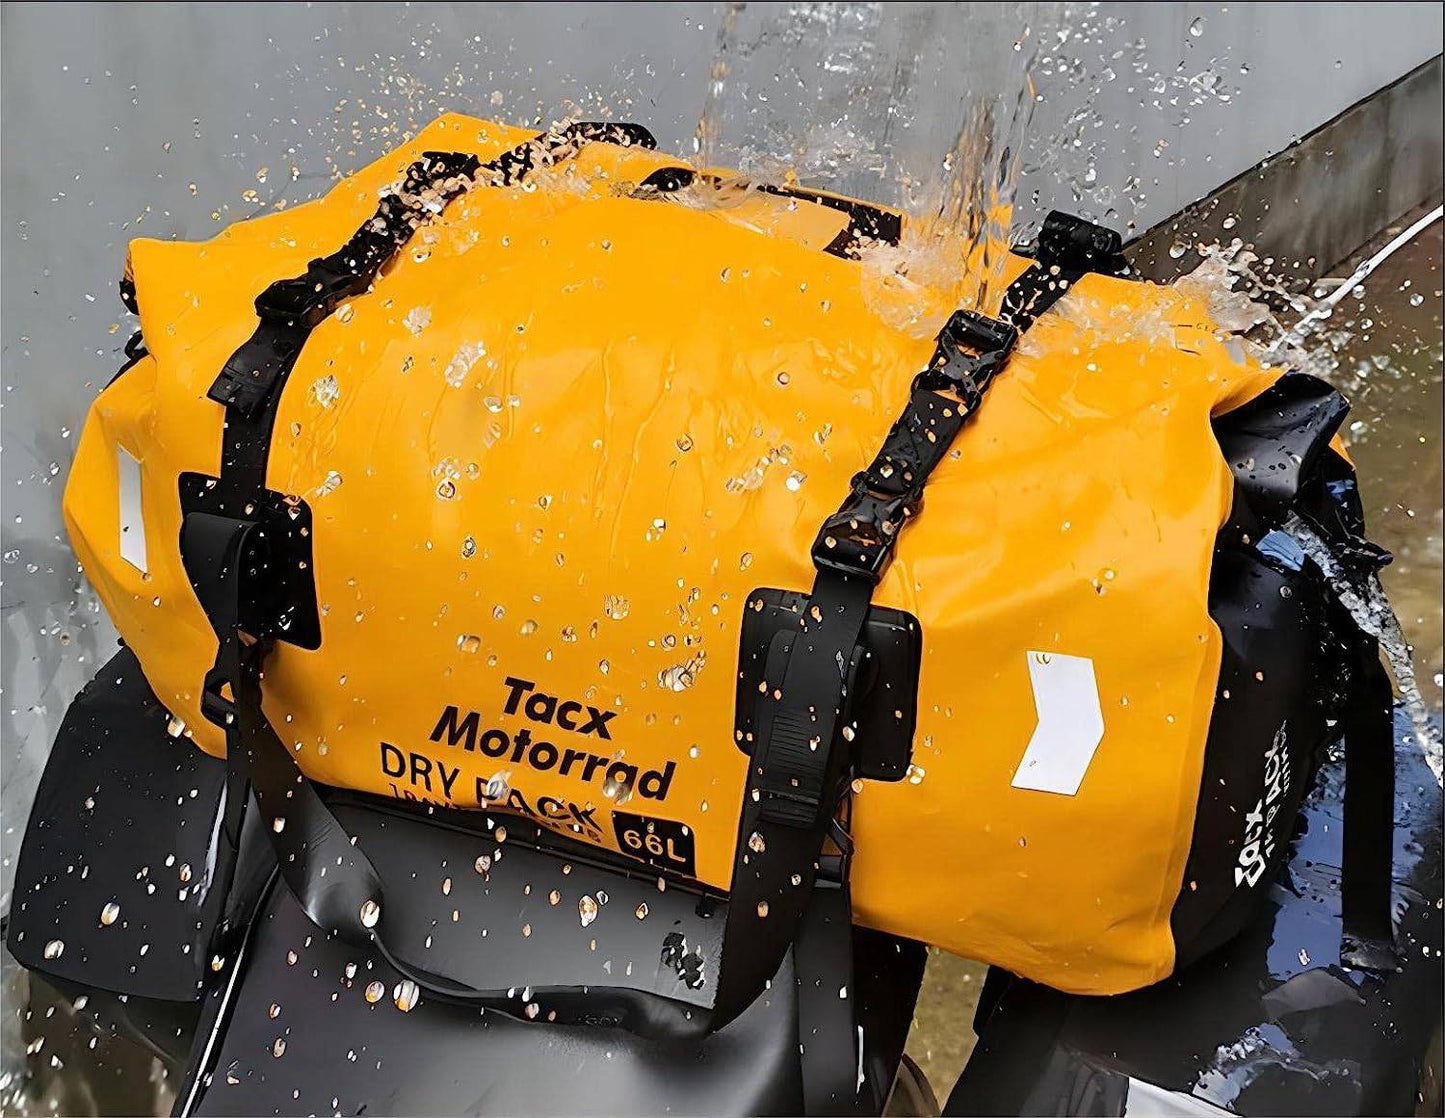 COOLBABY ZJJA18 COOLBABY Dry Duffle Backpack - 100% Waterproof, Spacious 66L Capacity Duffel Bag - COOL BABY